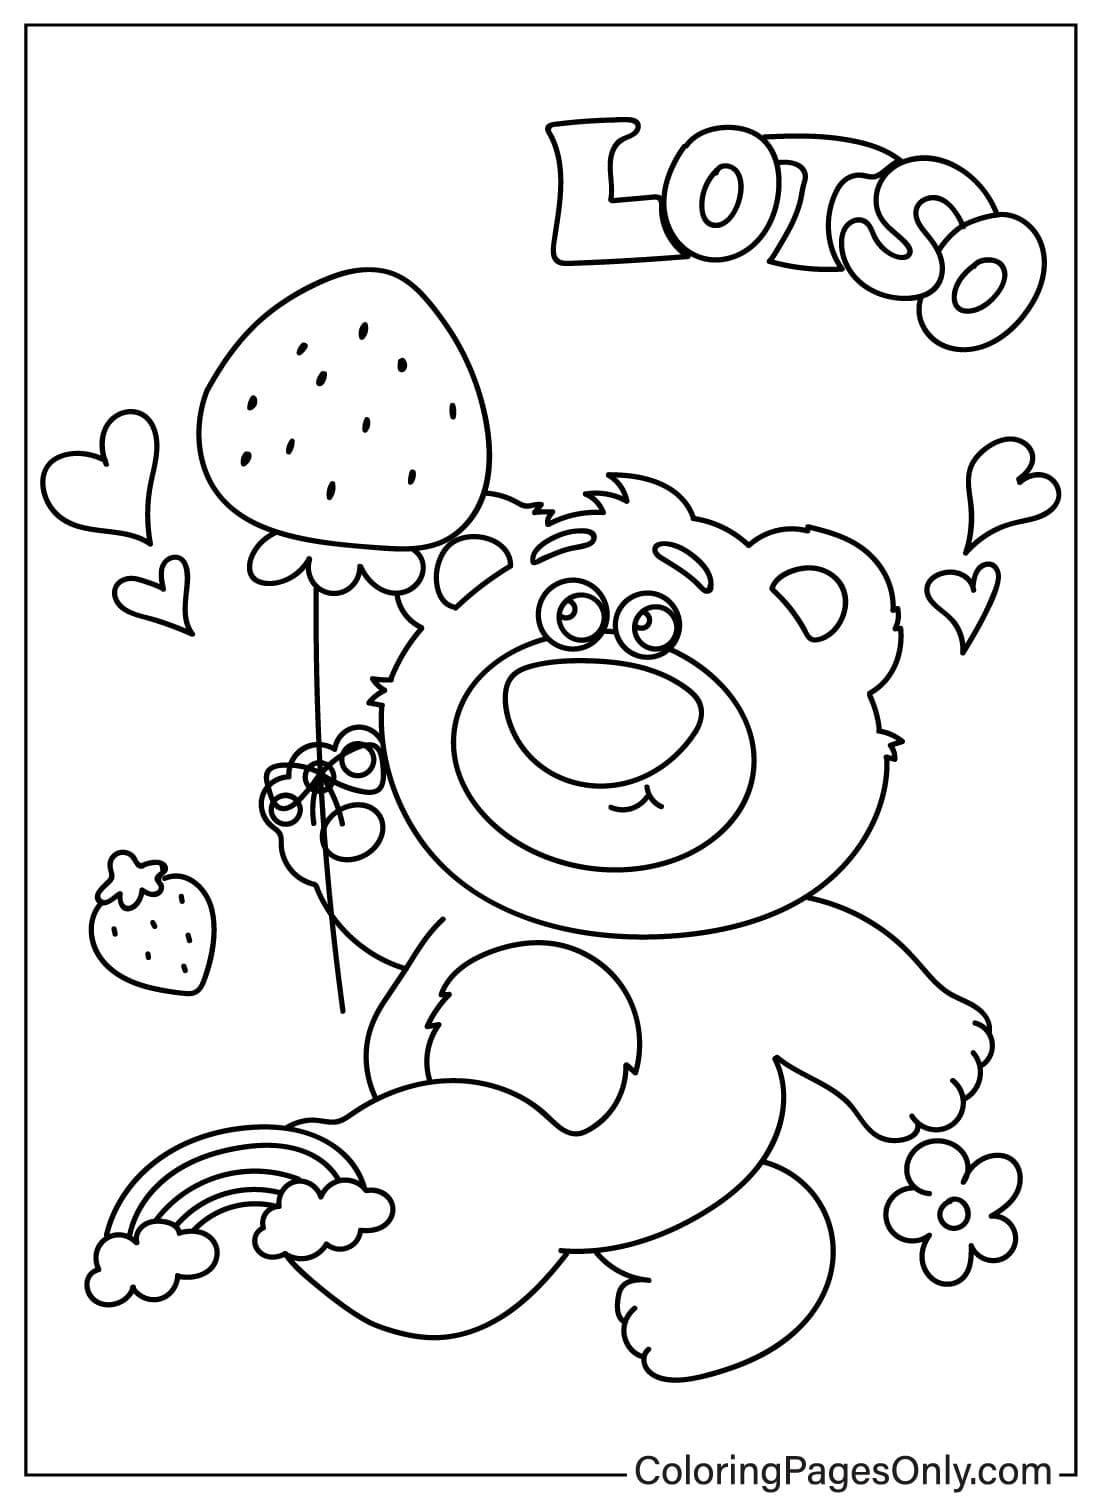 Página para colorear imprimible del oso Lotso del oso Lotso